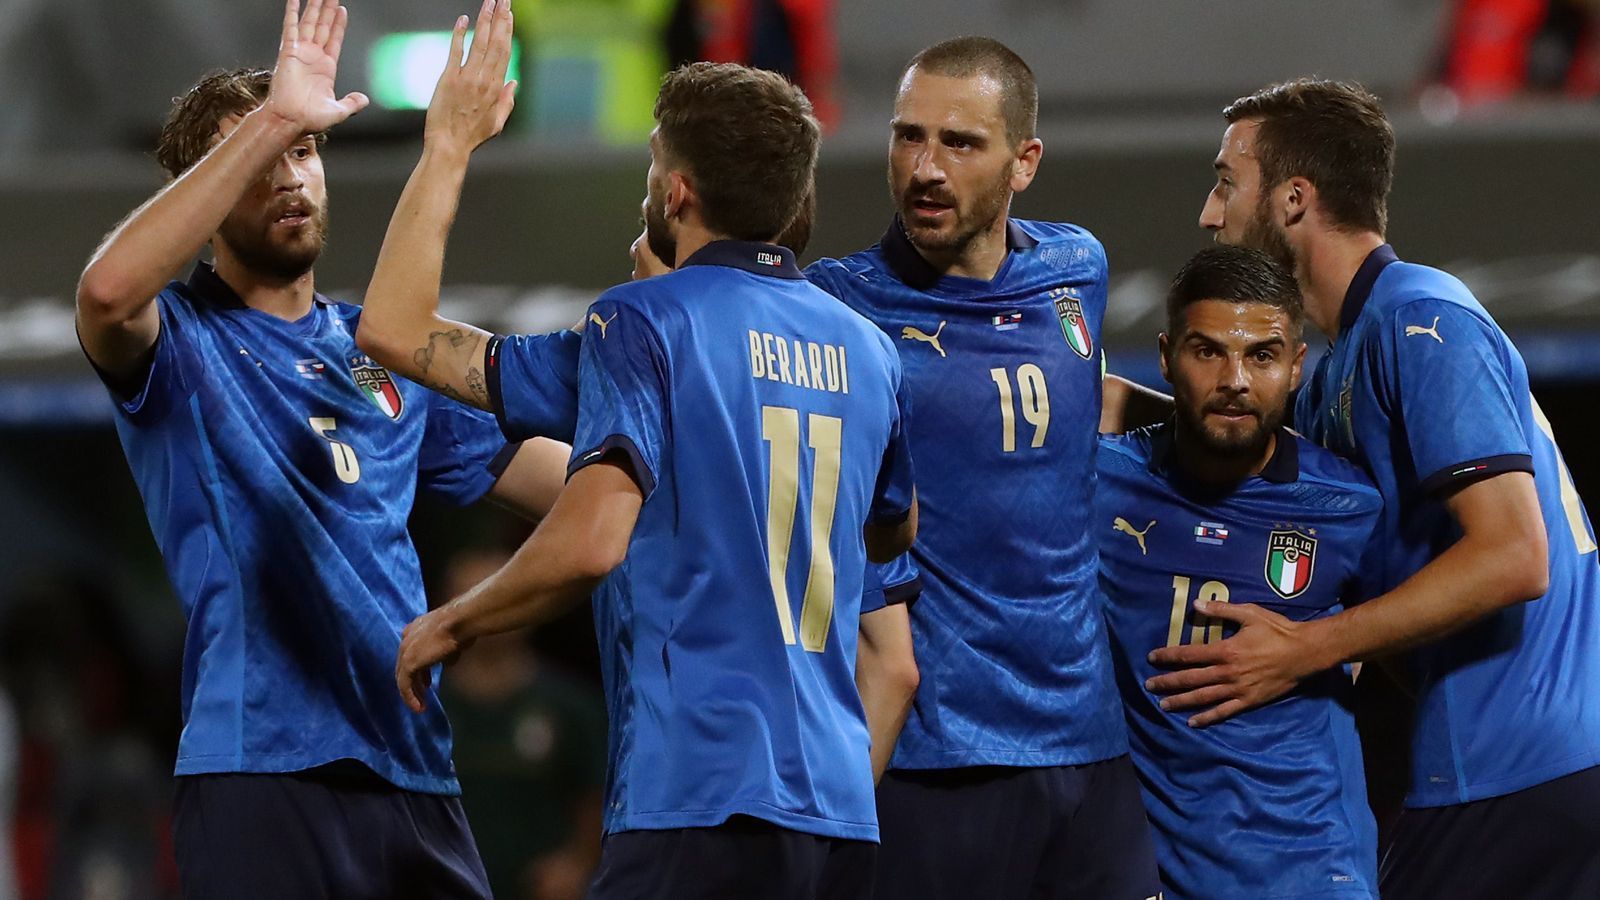 
                <strong>Italien</strong><br>
                Aktuelle Weltranglisten-Platzierung: 7. - Punkte: 1642,06
              